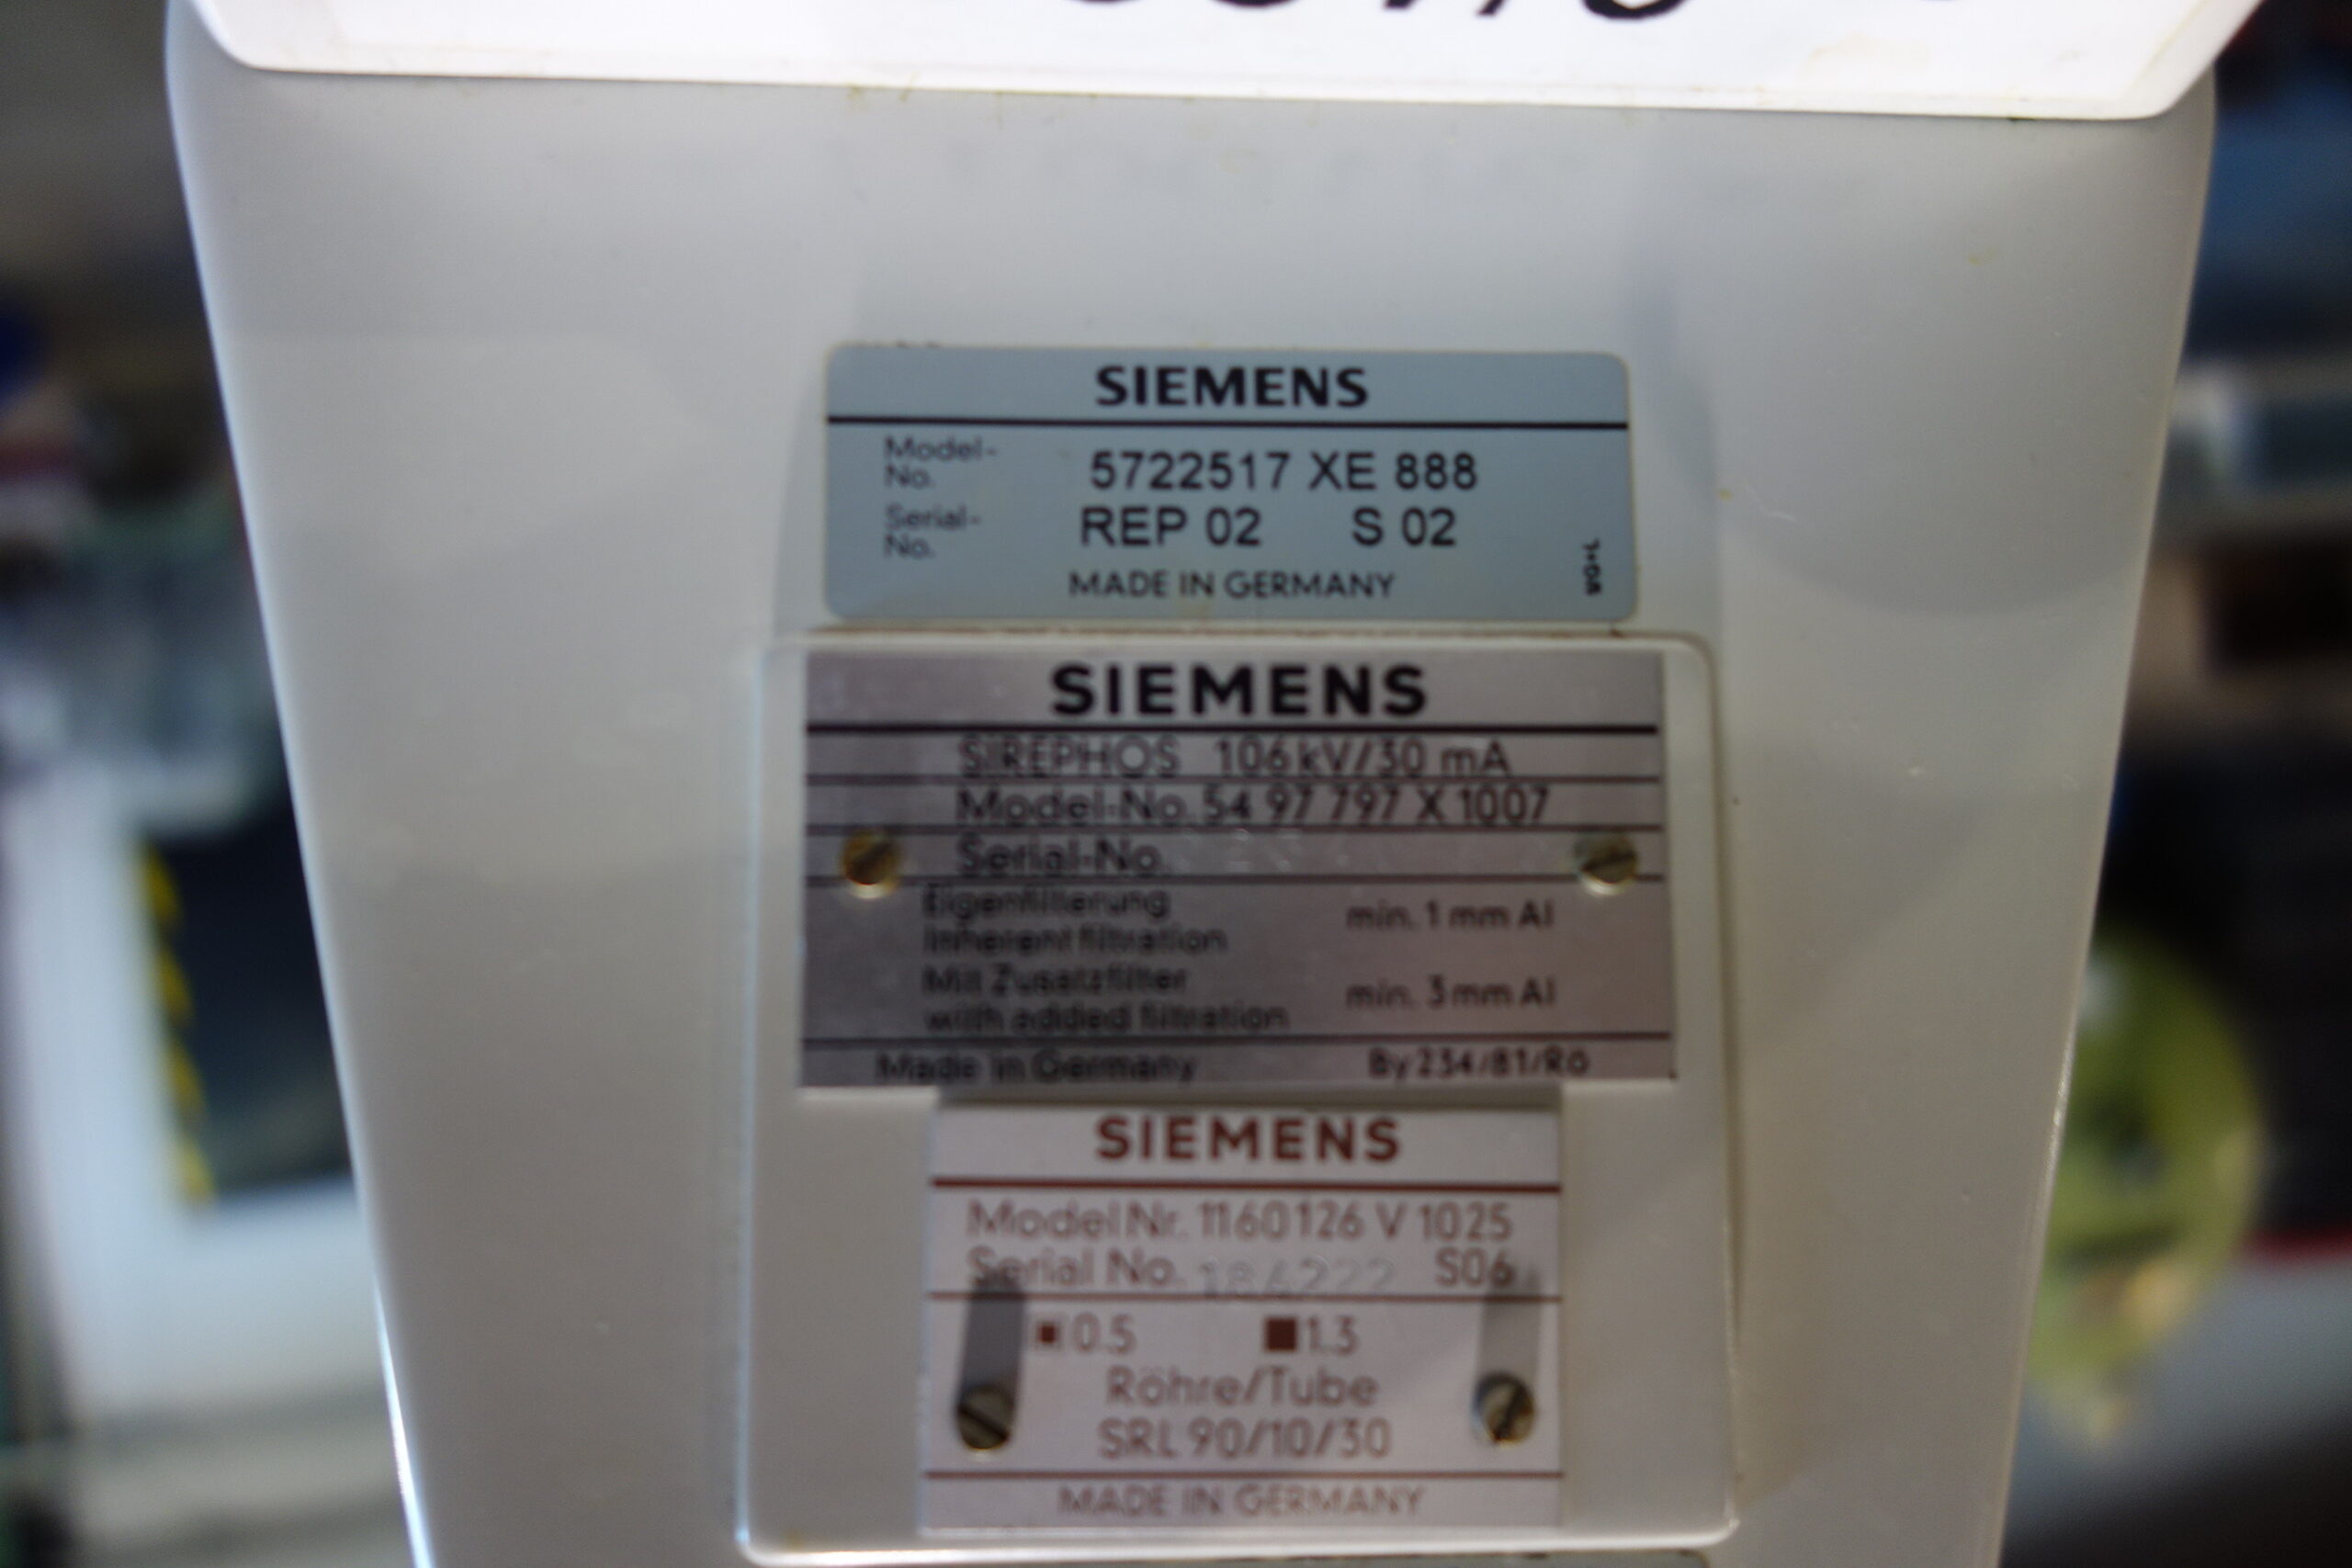 Siemens Siremobil 4K 006